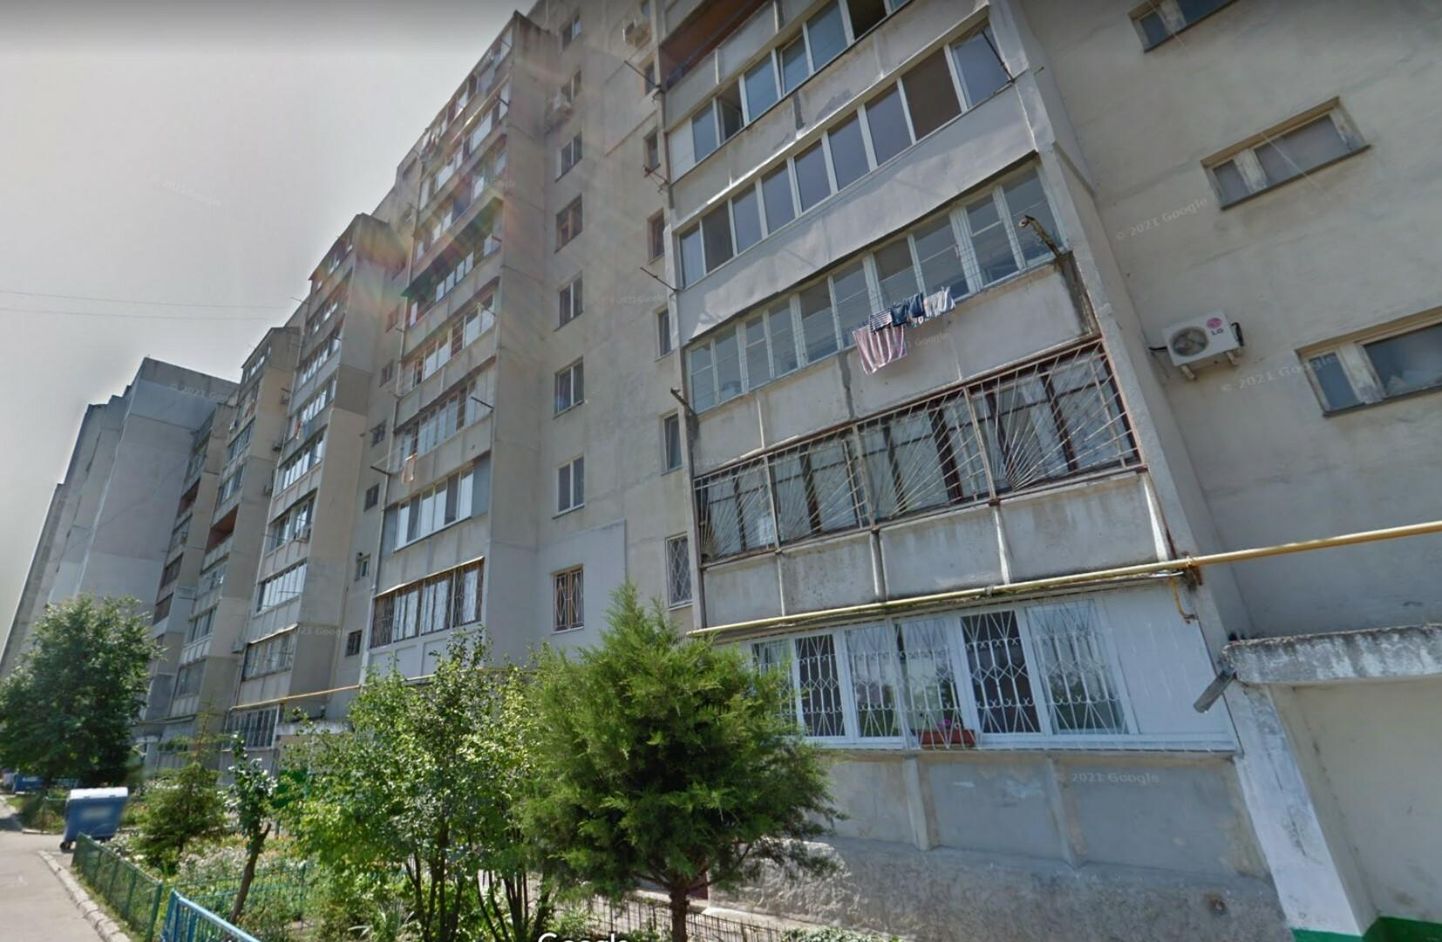 Mahachkalinska 18, Odessa. Svetlana Tšernjavskaja kodu on neljandal korrusel, tema rõdu on käterätikutega rõdu kohal